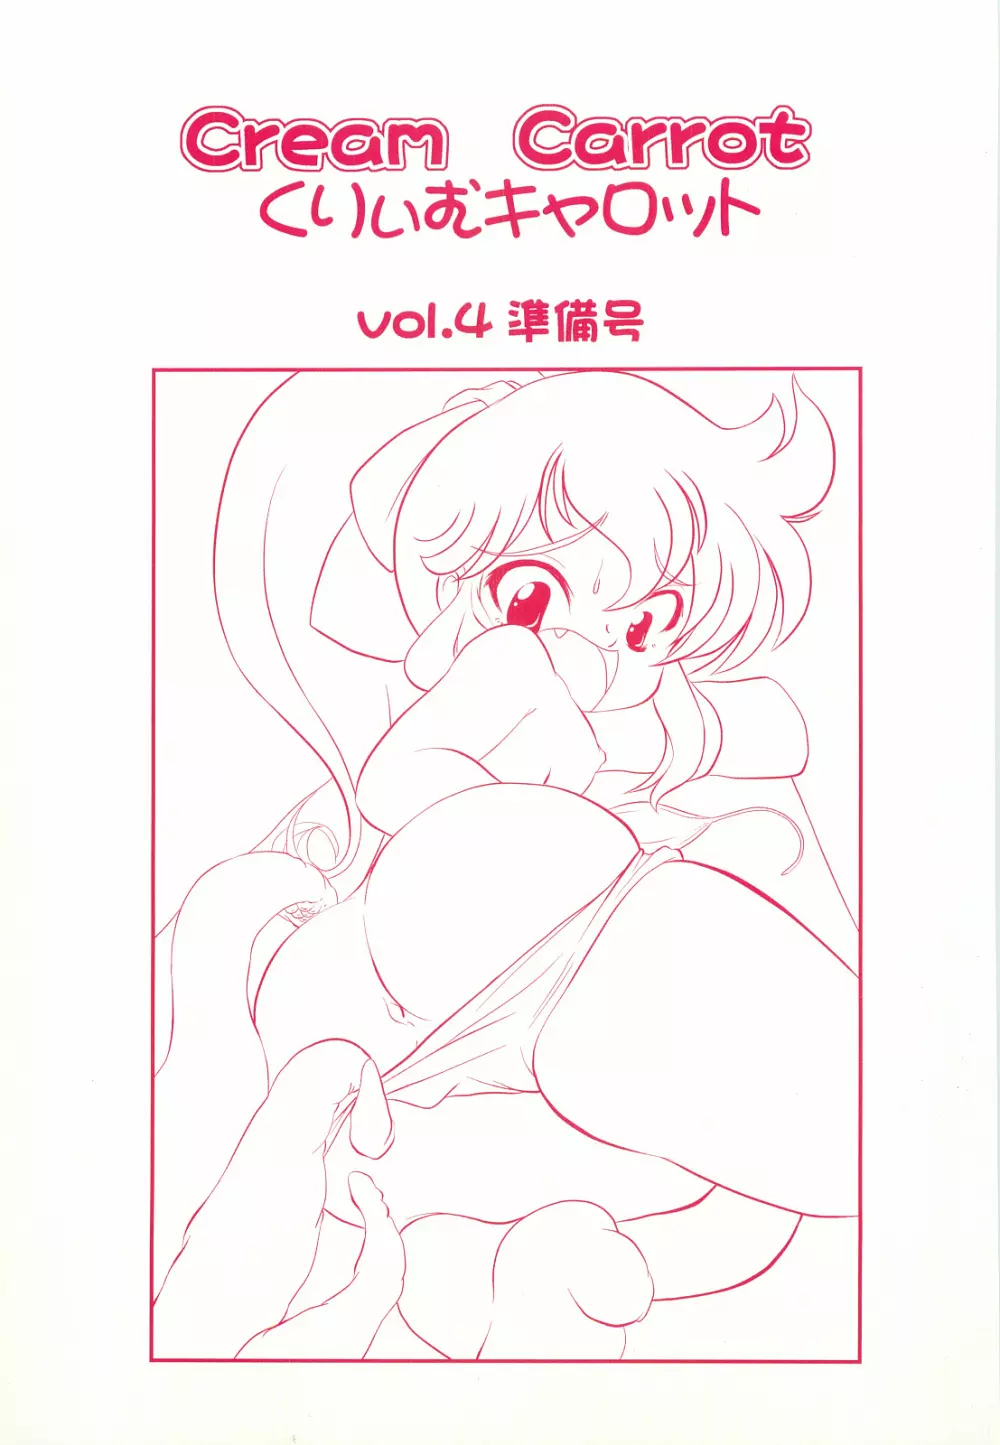 くりぃむキャロット vol.4 準備号